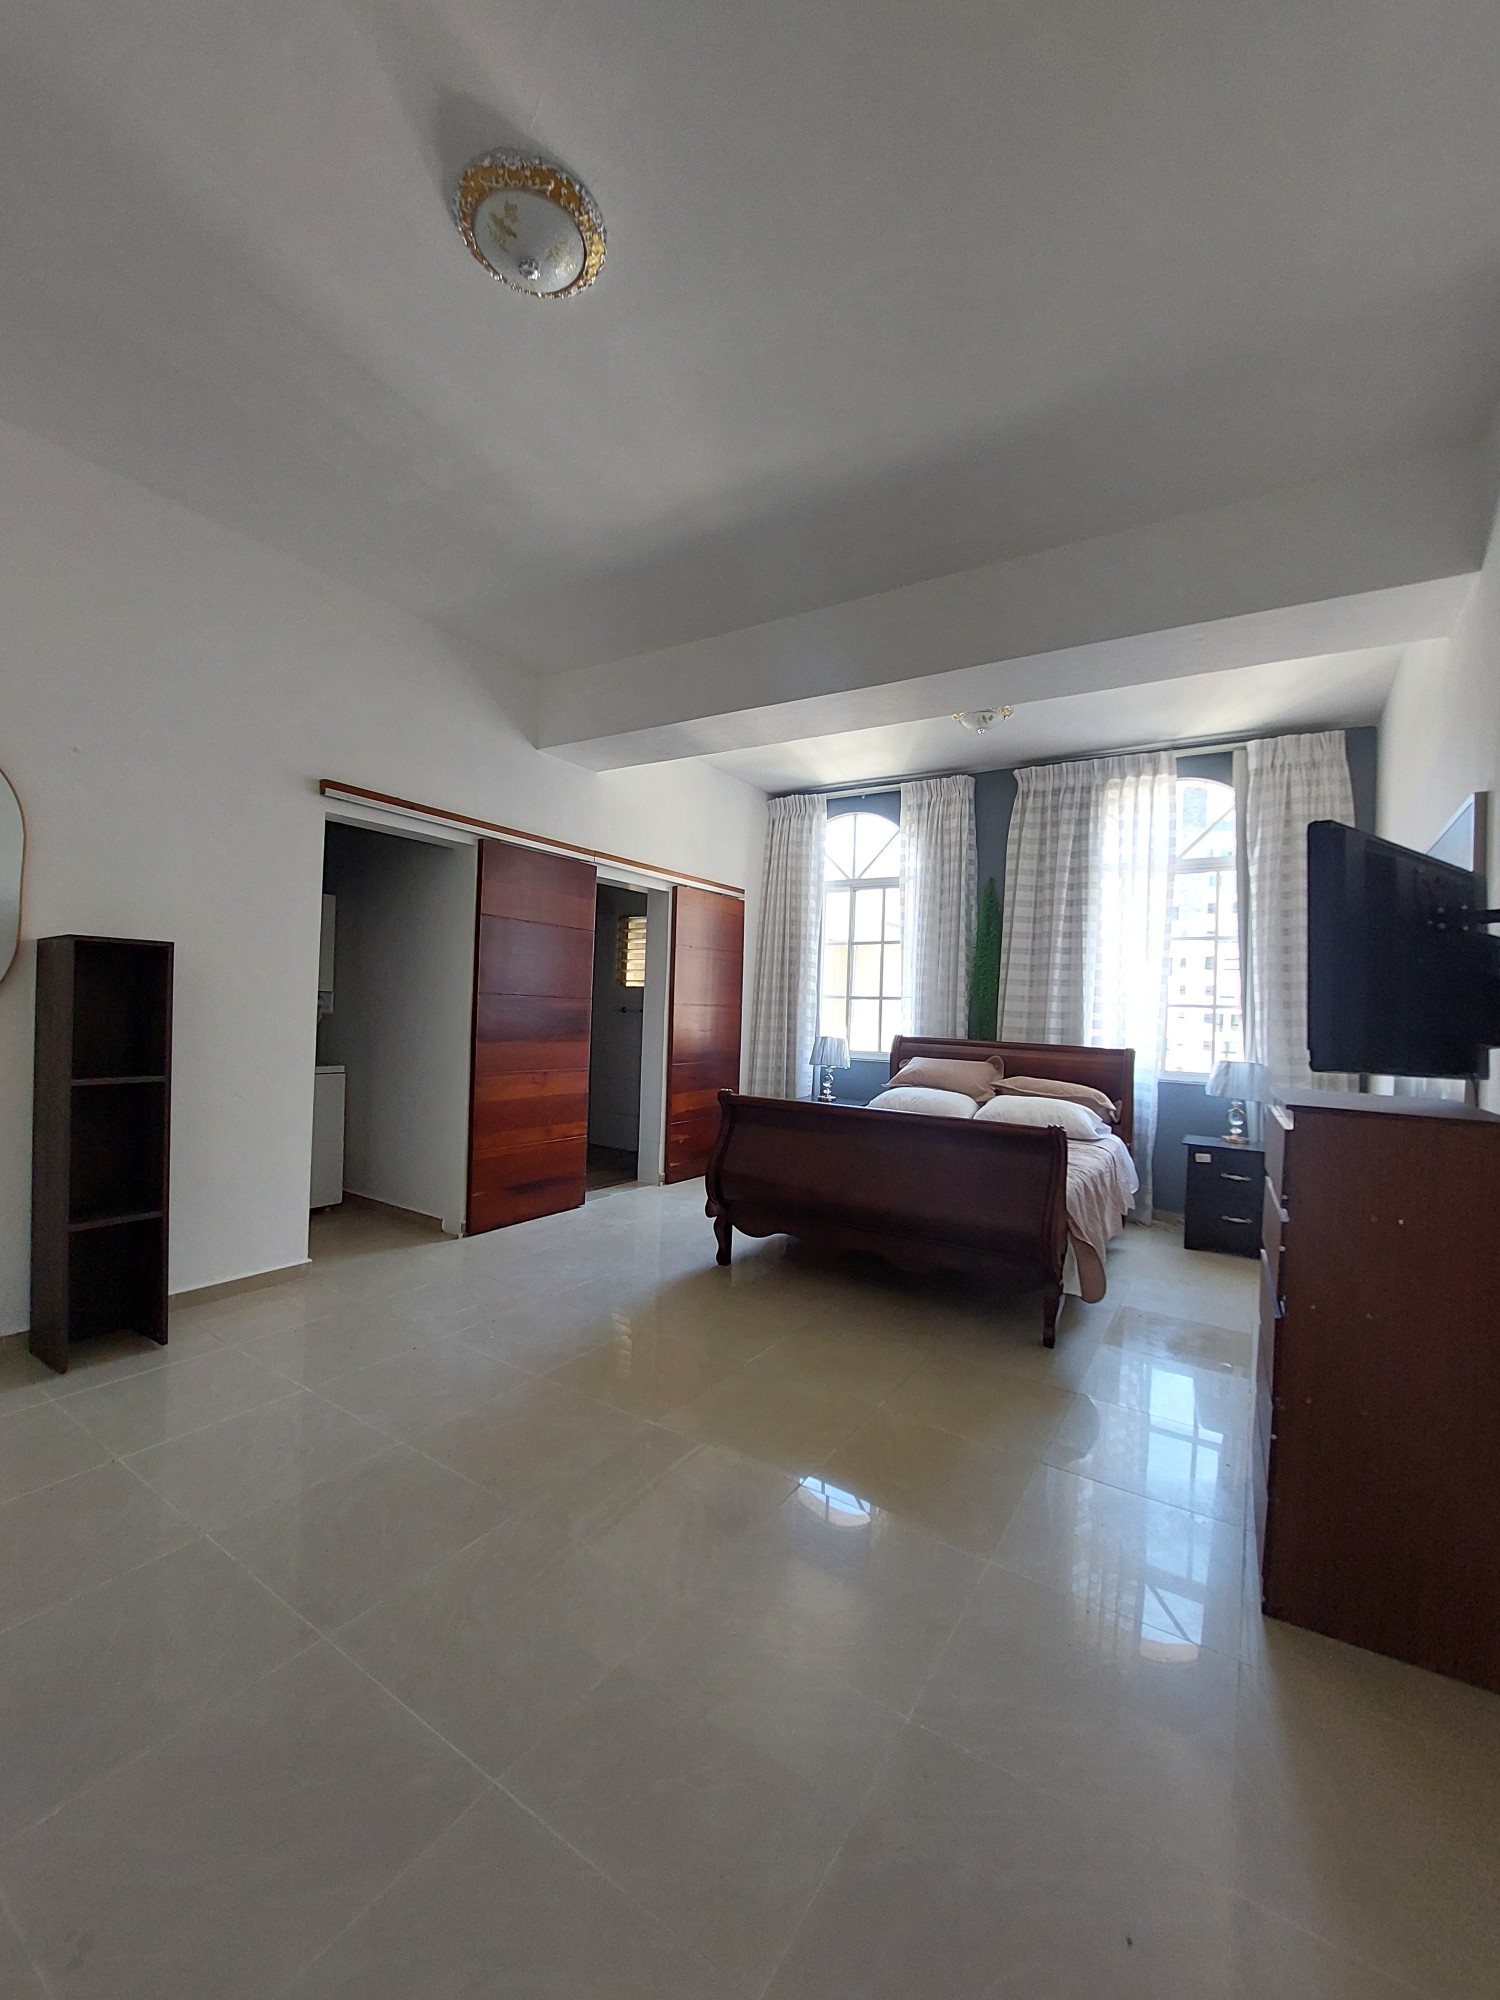 apartamentos - Apartamento amueblado de 1 habitación en piso alto bien ubicado en Piantini 5